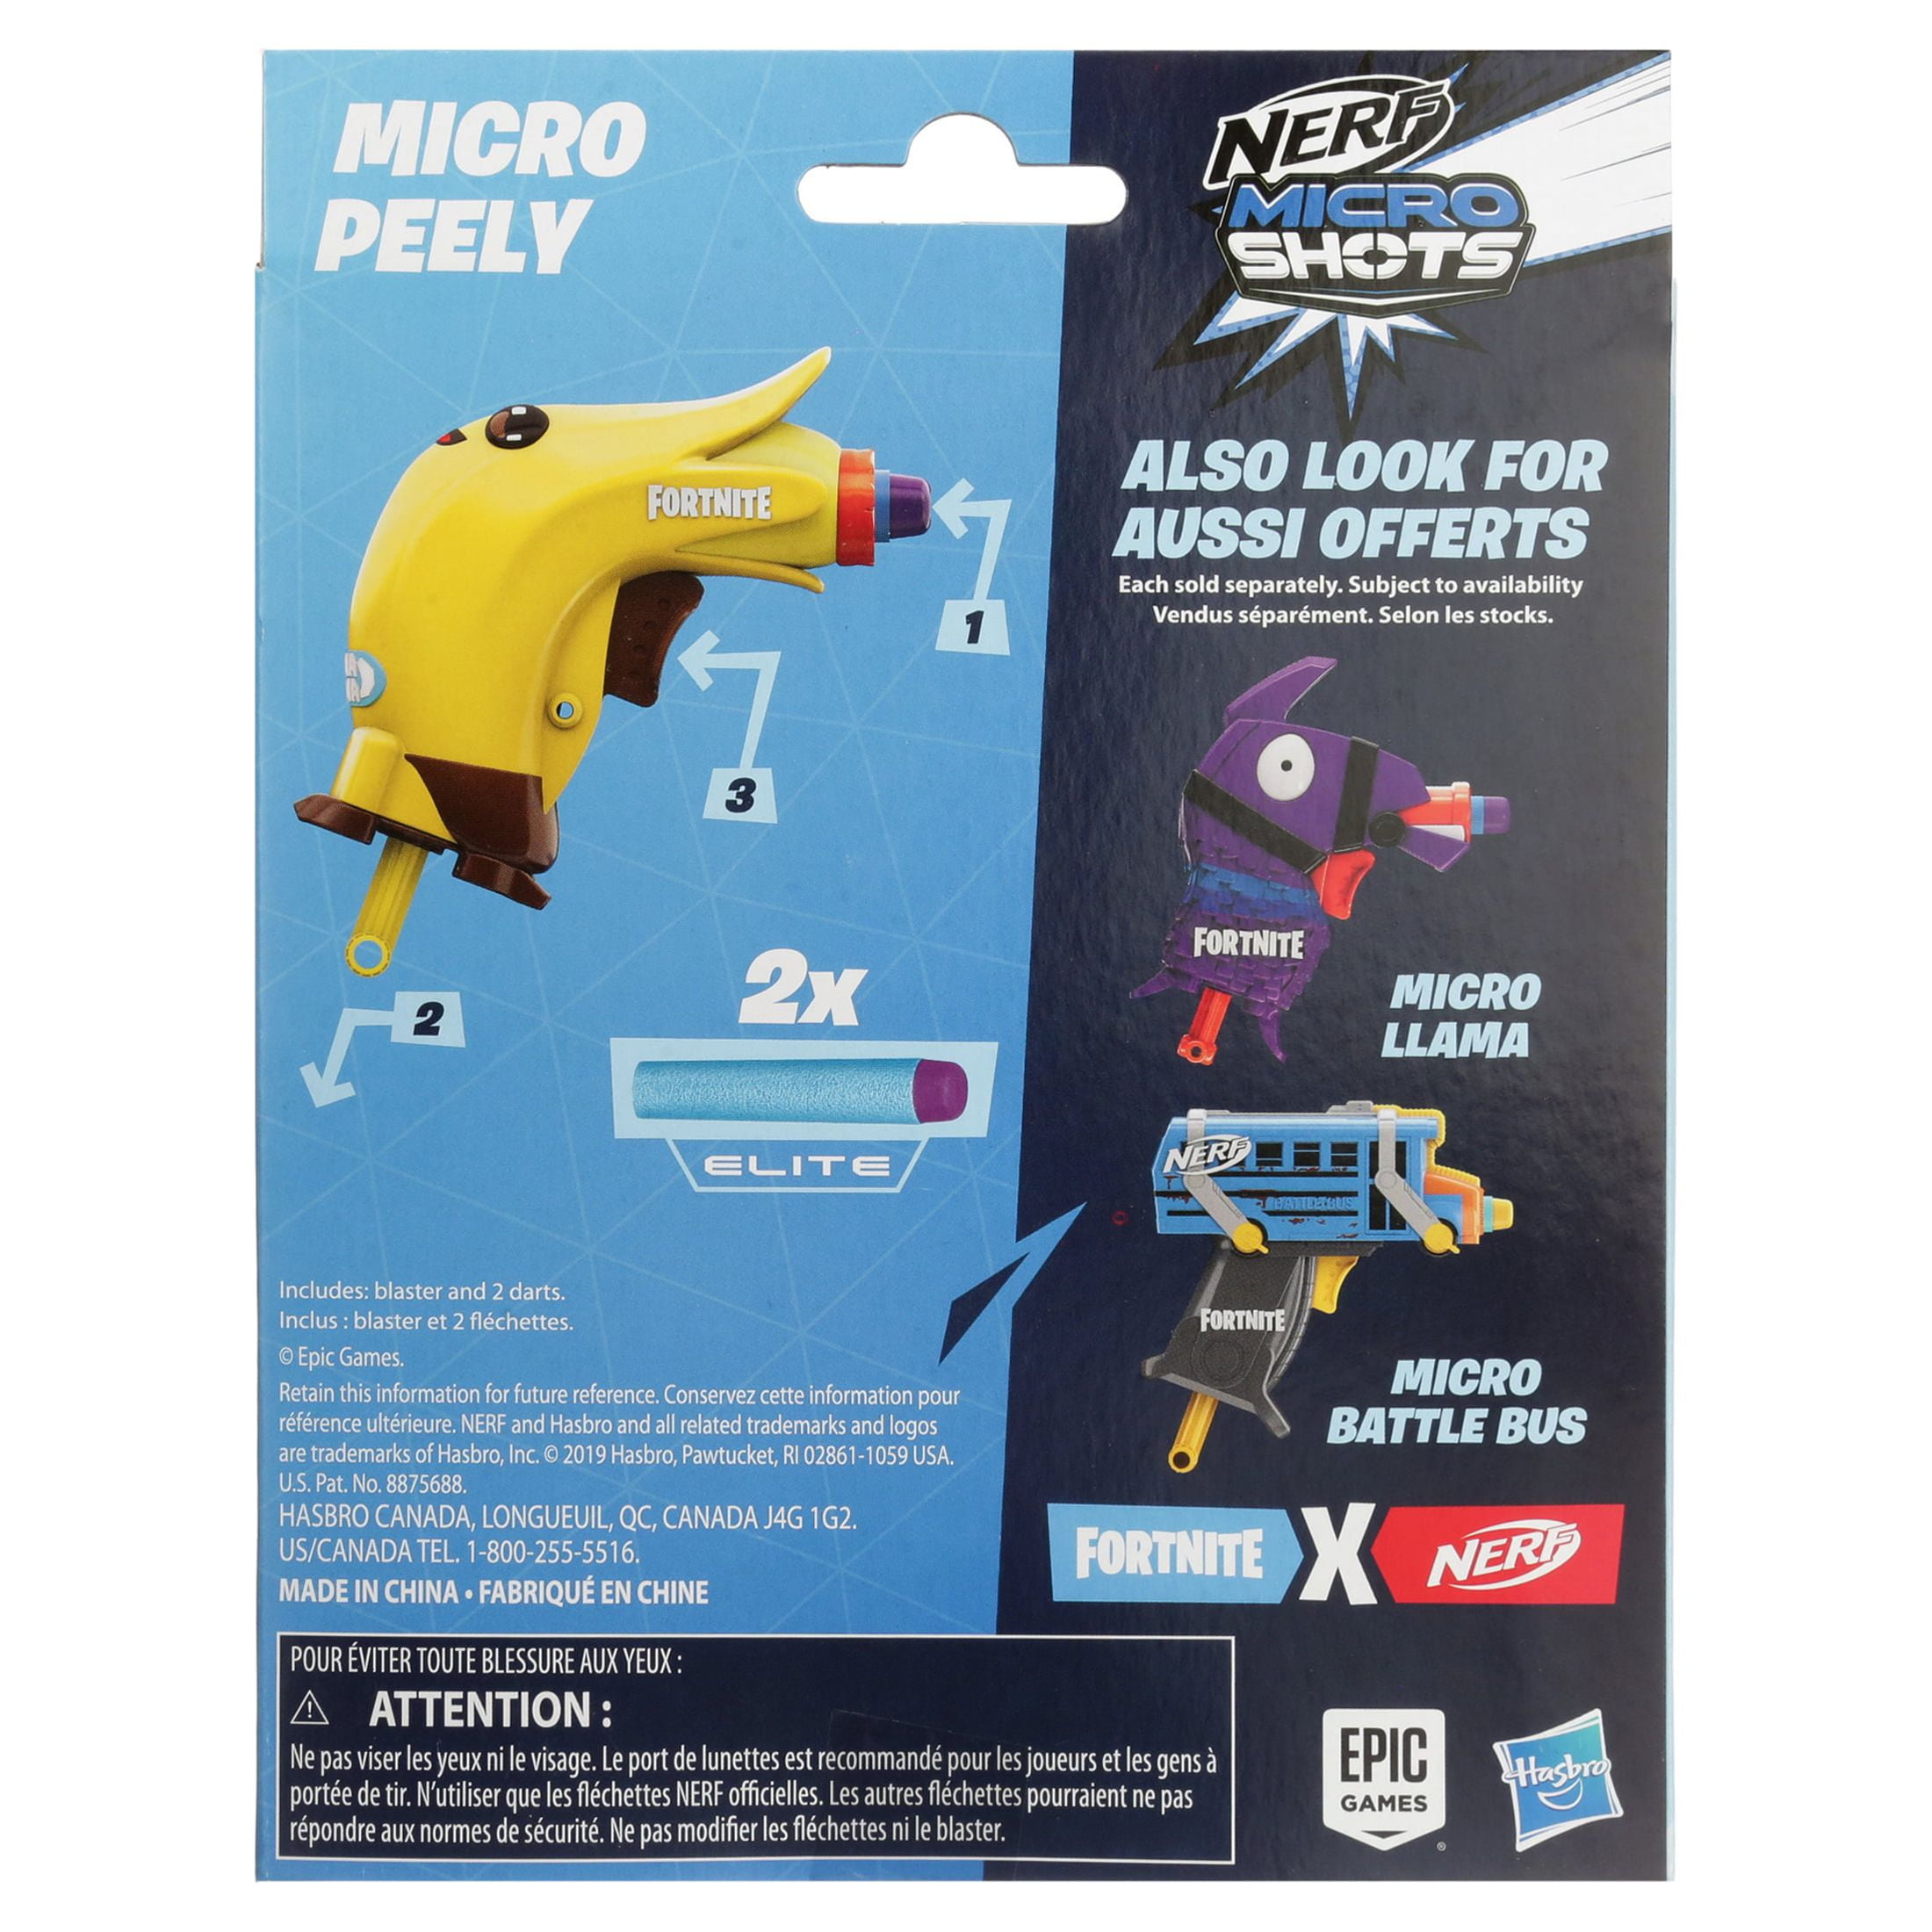 Nerf MicroShots Minecraft Cave Spider Blaster, Includes 2 Nerf Elite Foam  Darts - Nerf